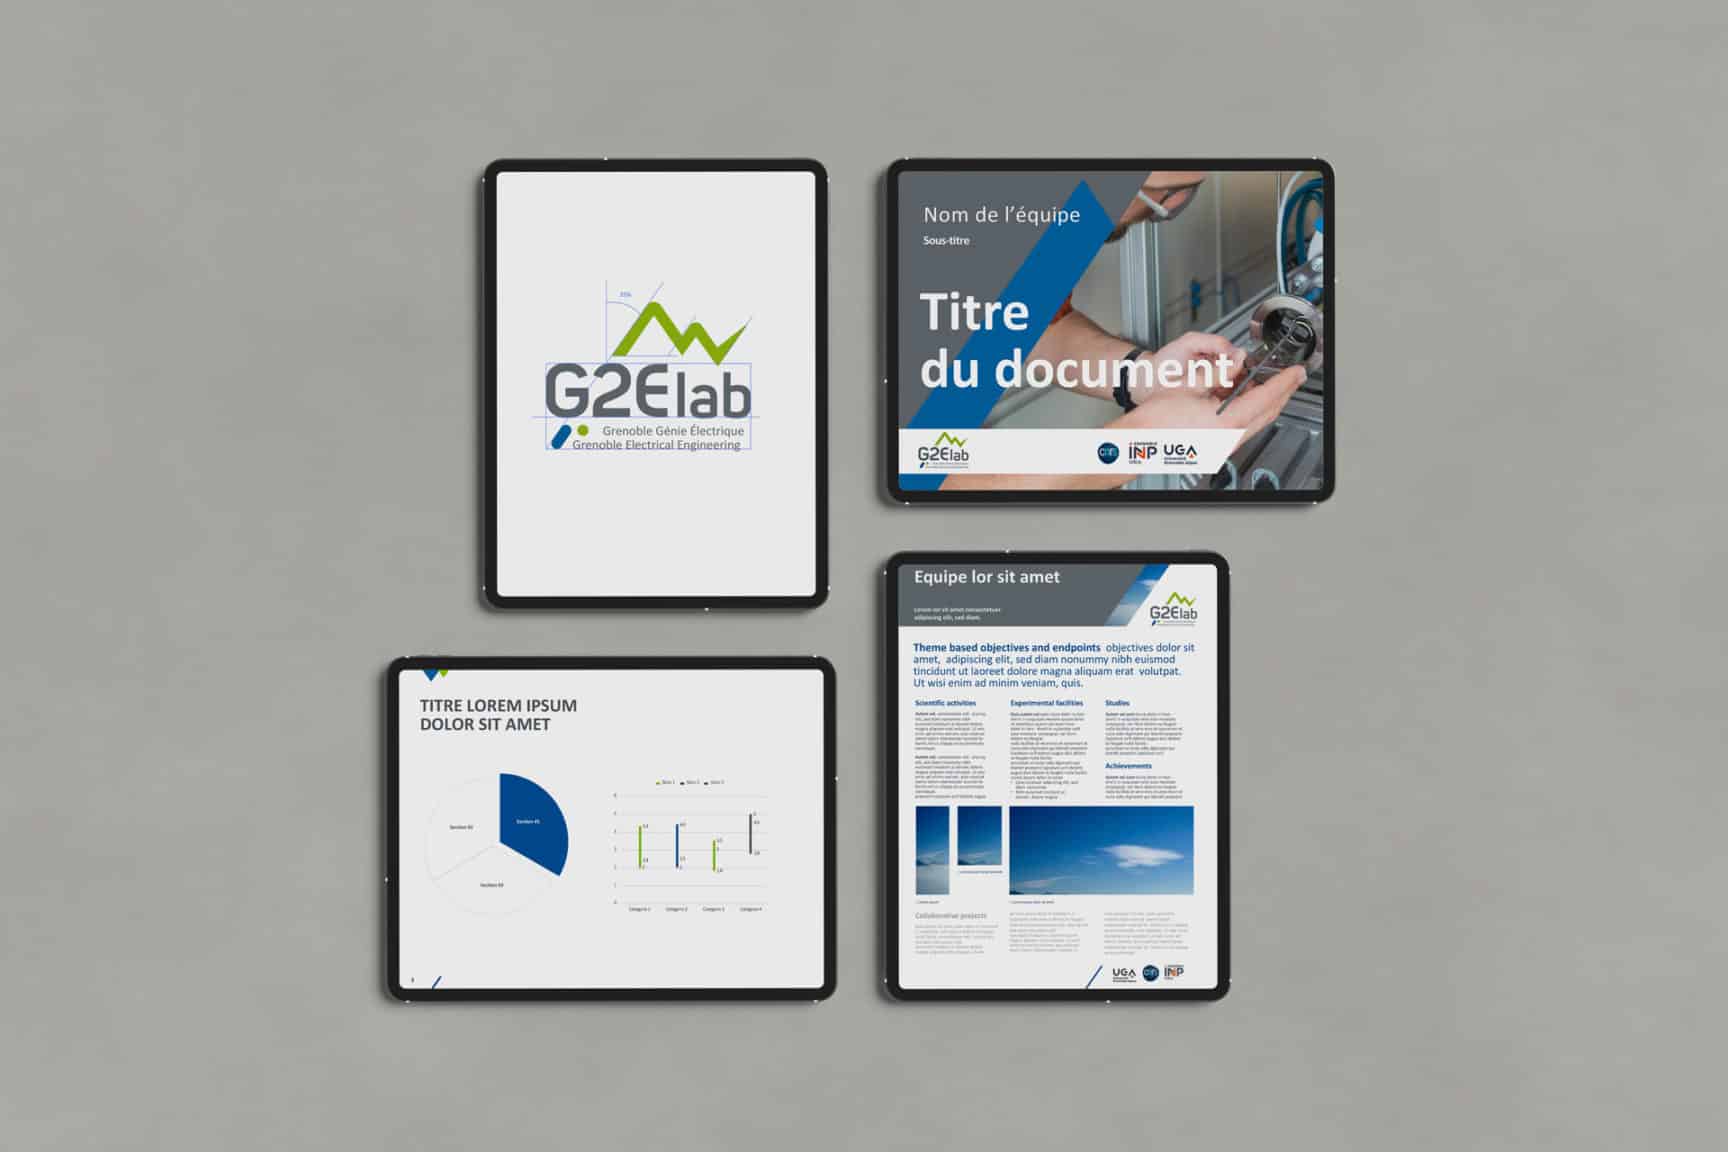 Nouvelle identité visuelle pour G2Elab : extraits de leur charte graphique